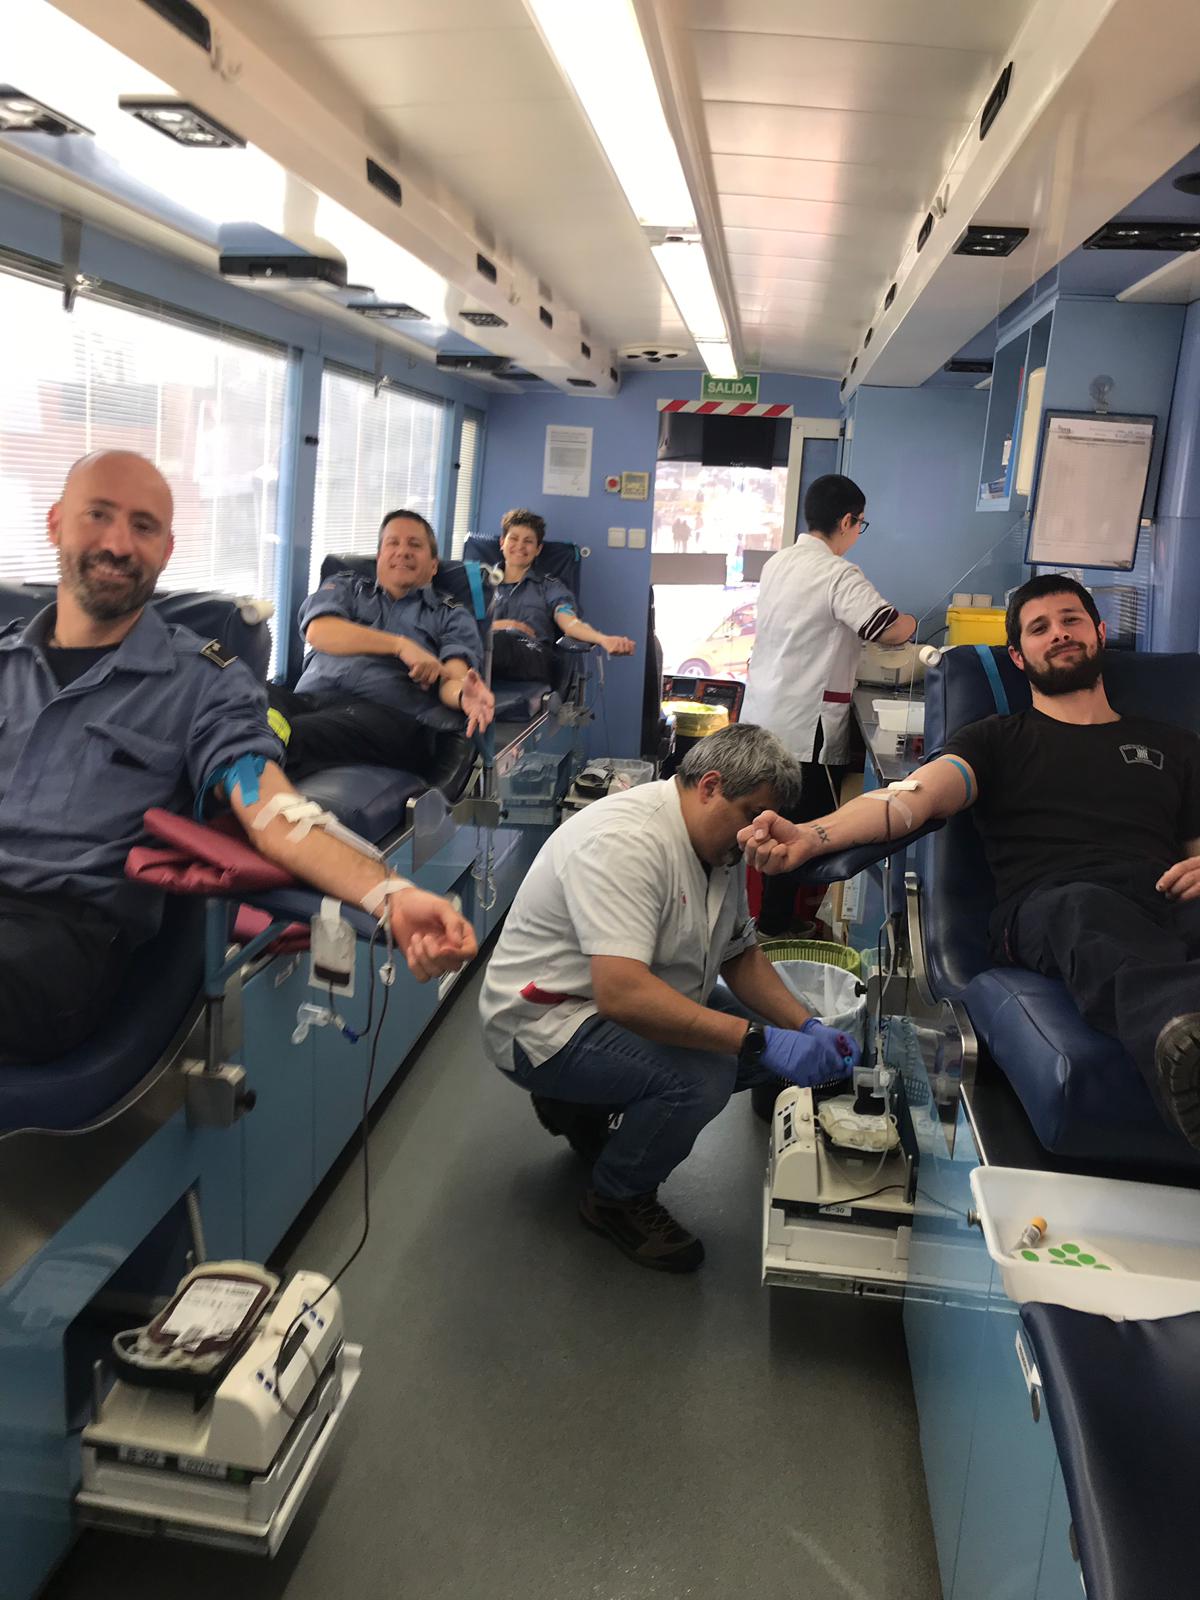 Bombers voluntaris de Caldes fent la donació de sang